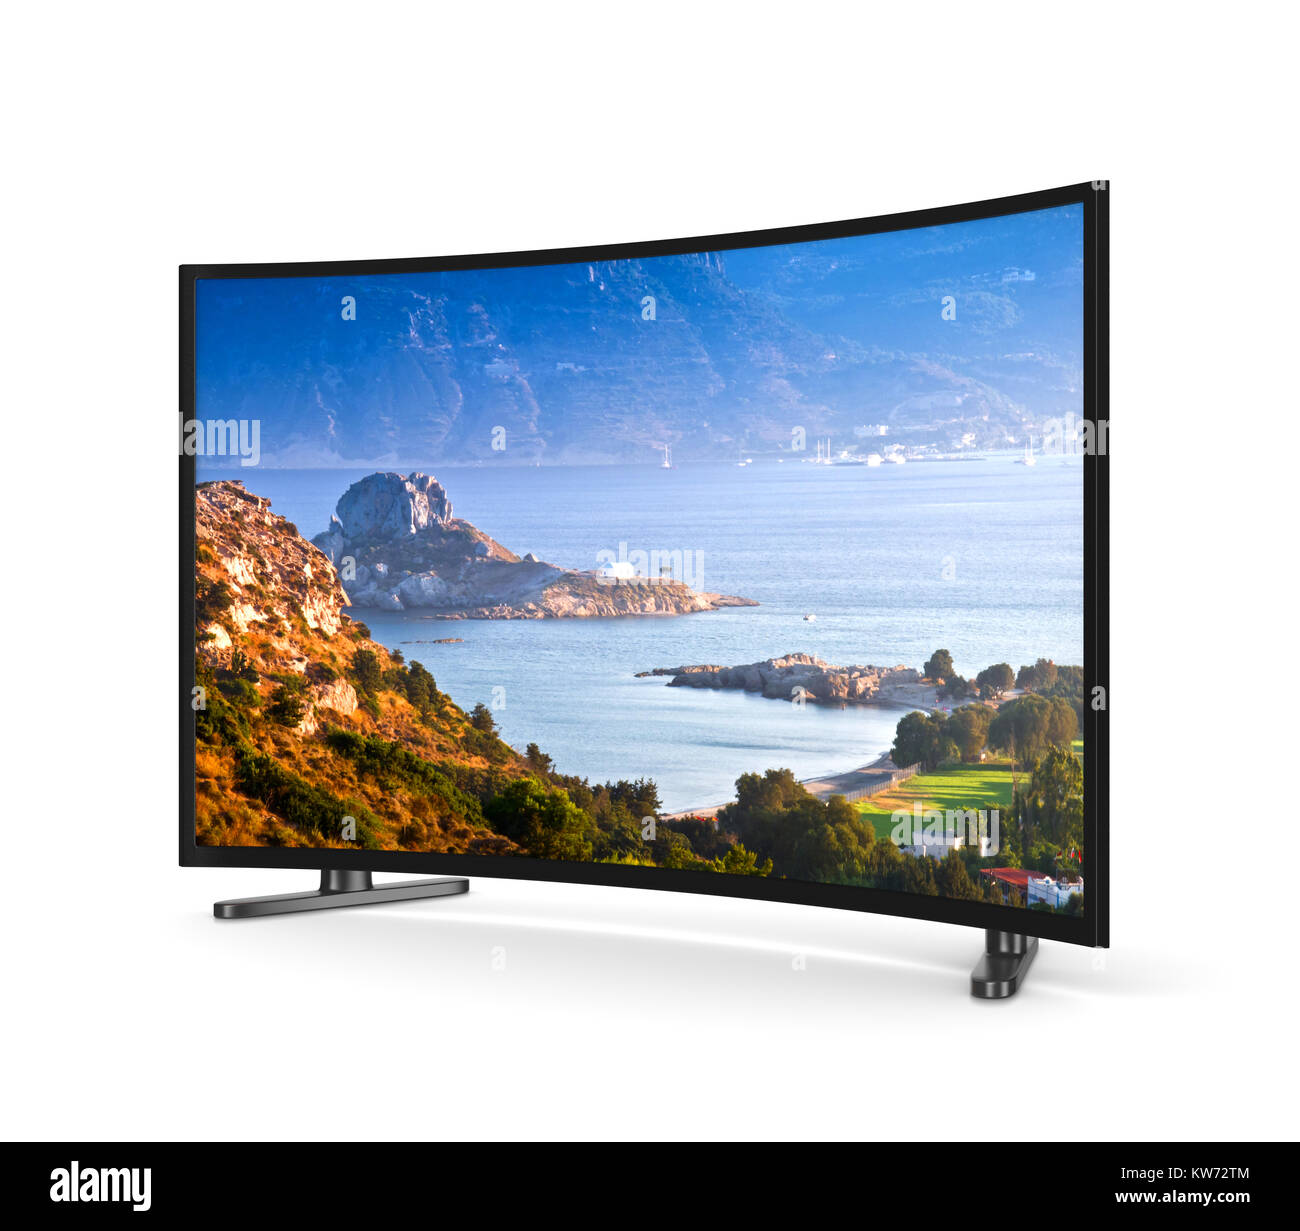 Moderno televisore con schermo curvo che mostra Kos isola greca paesaggio su sfondo bianco 3D illustrazione Foto Stock